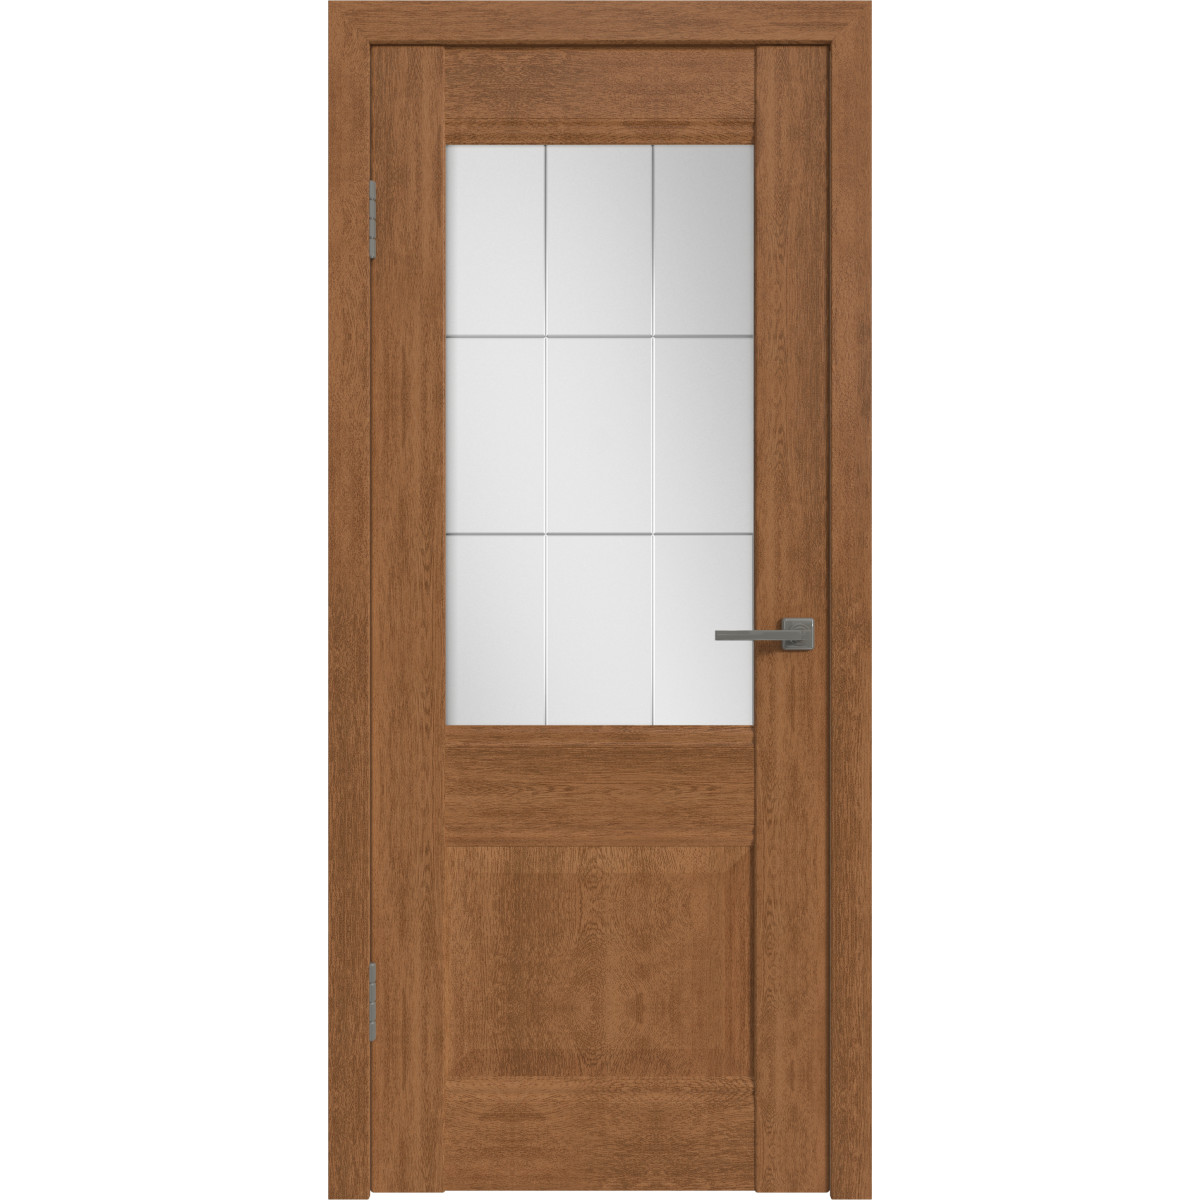 Дверь межкомнатная остеклённая с замком и петлями в комплекте Классик 2 80x200 см ПВХ цвет дуб аурум